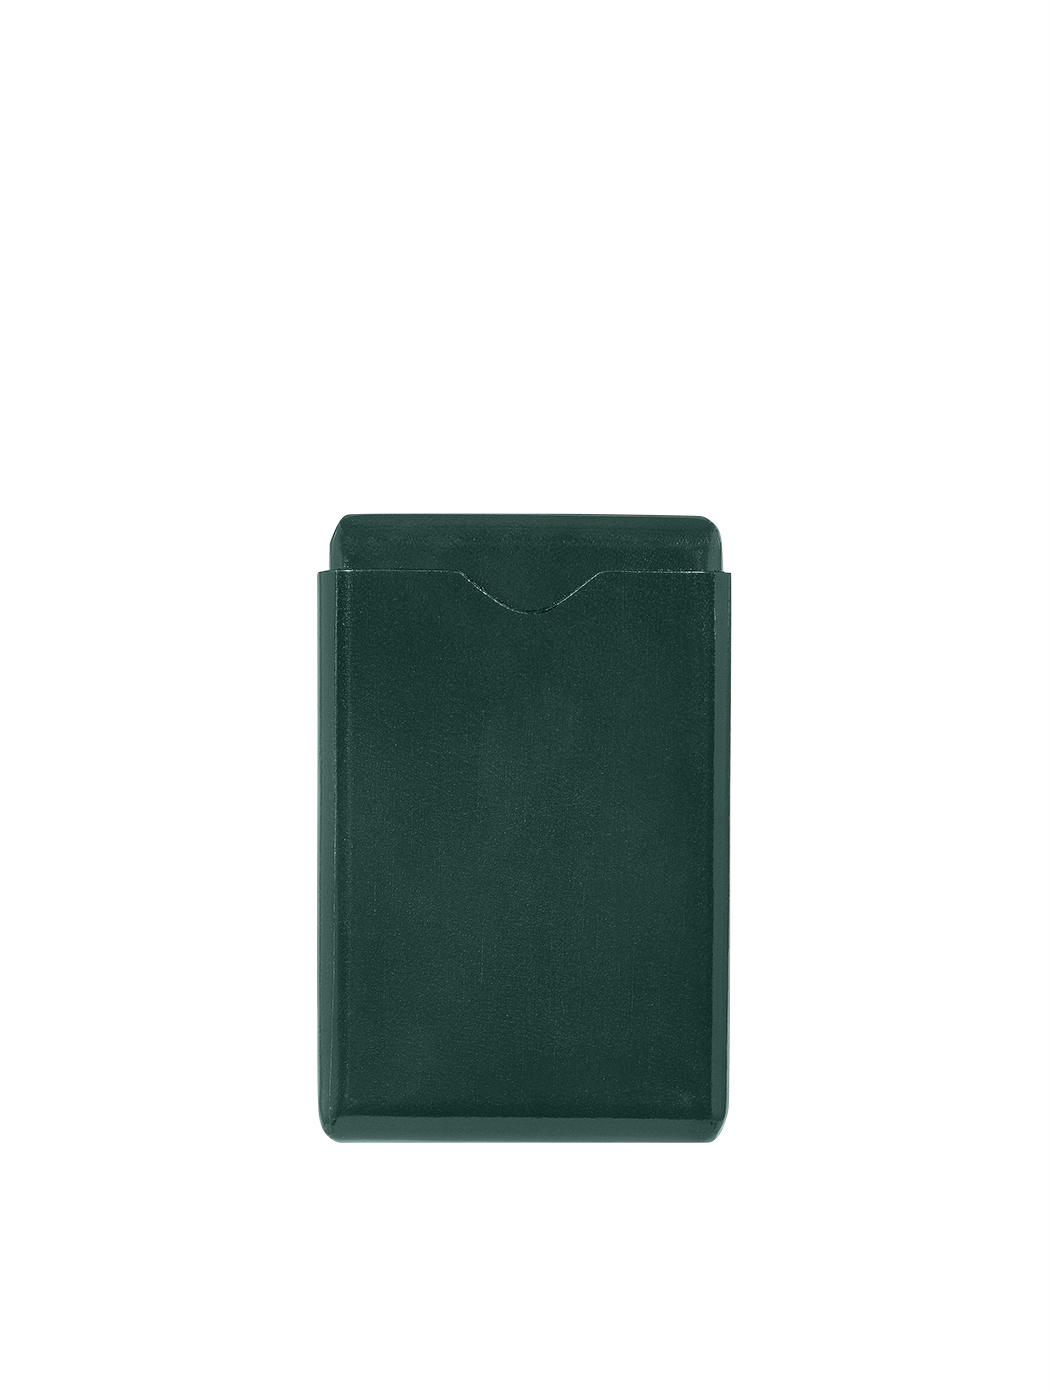 Кожаный футляр для визитных карточек зеленого цвета